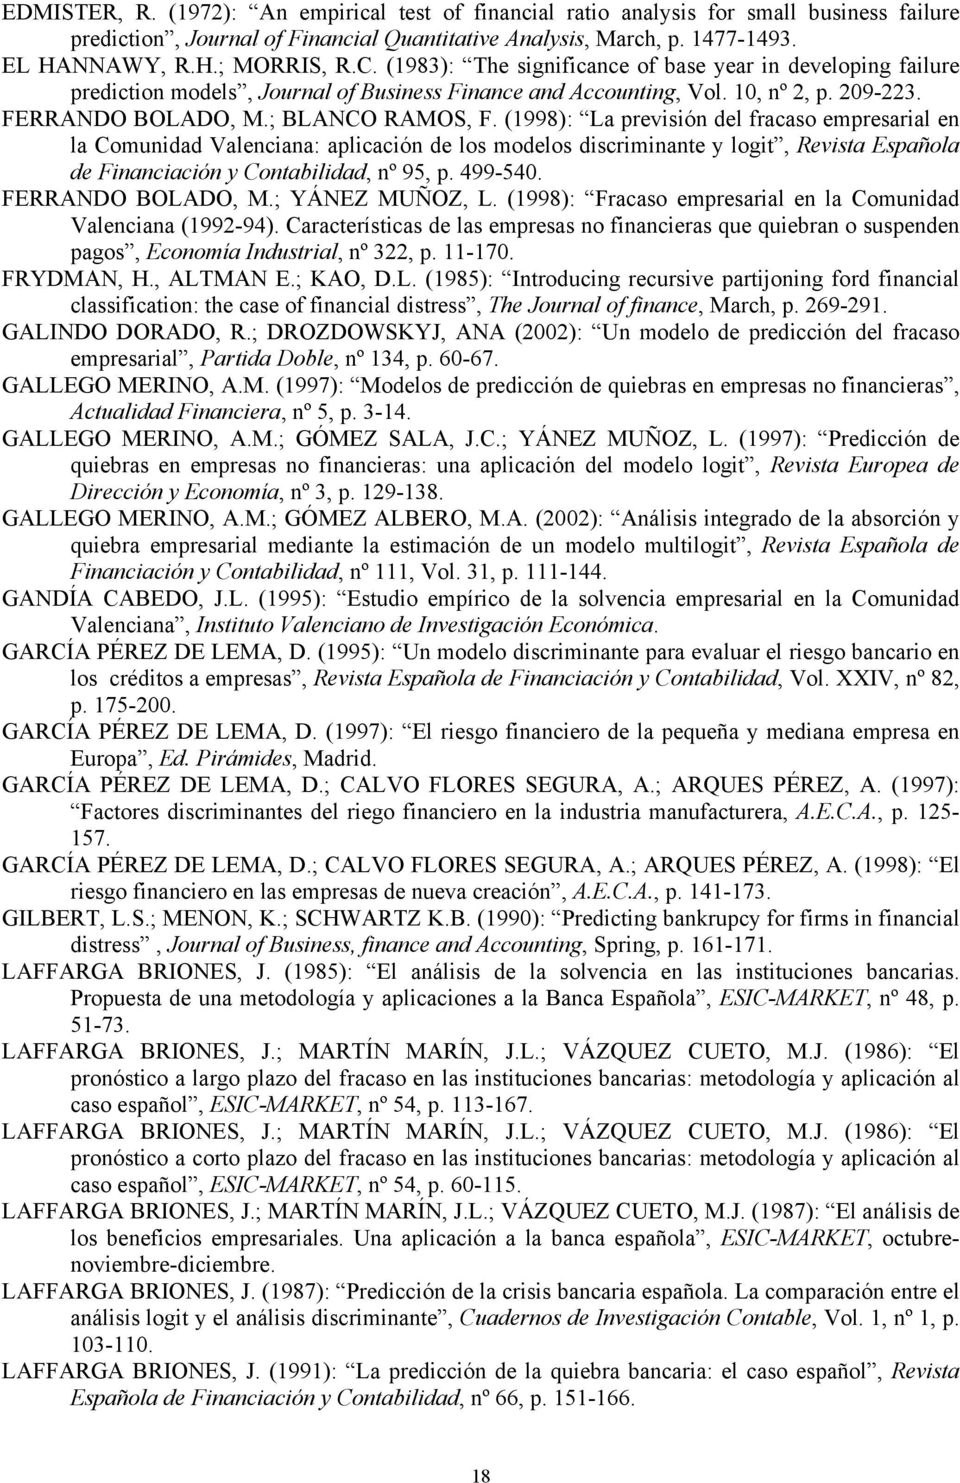 (1998): La previsión del fracaso empresarial en la Comunidad Valenciana: aplicación de los modelos discriminante y logit, Revista Española de Financiación y Contabilidad, nº 95, p. 499-540.